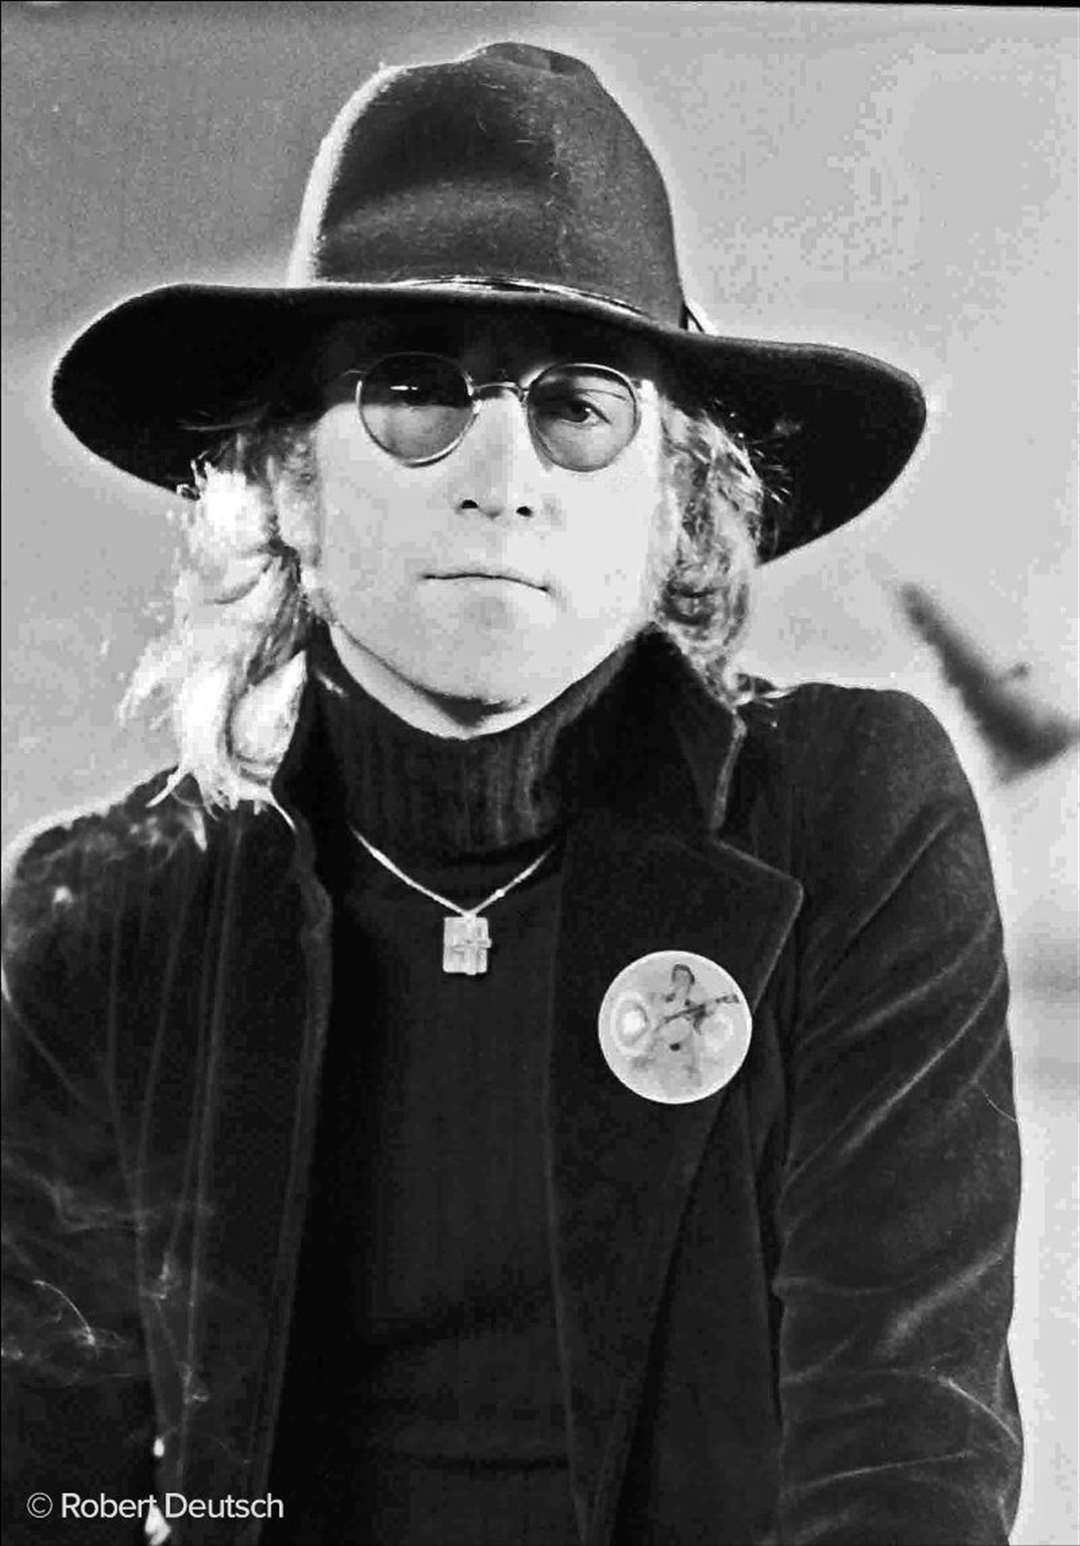 John Lennon (Robert Deutsch/PA)